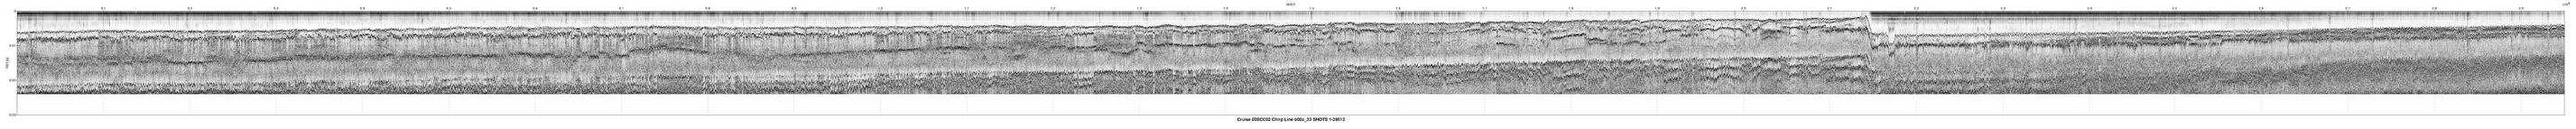 00SCC02 b00c_33 seismic profile image